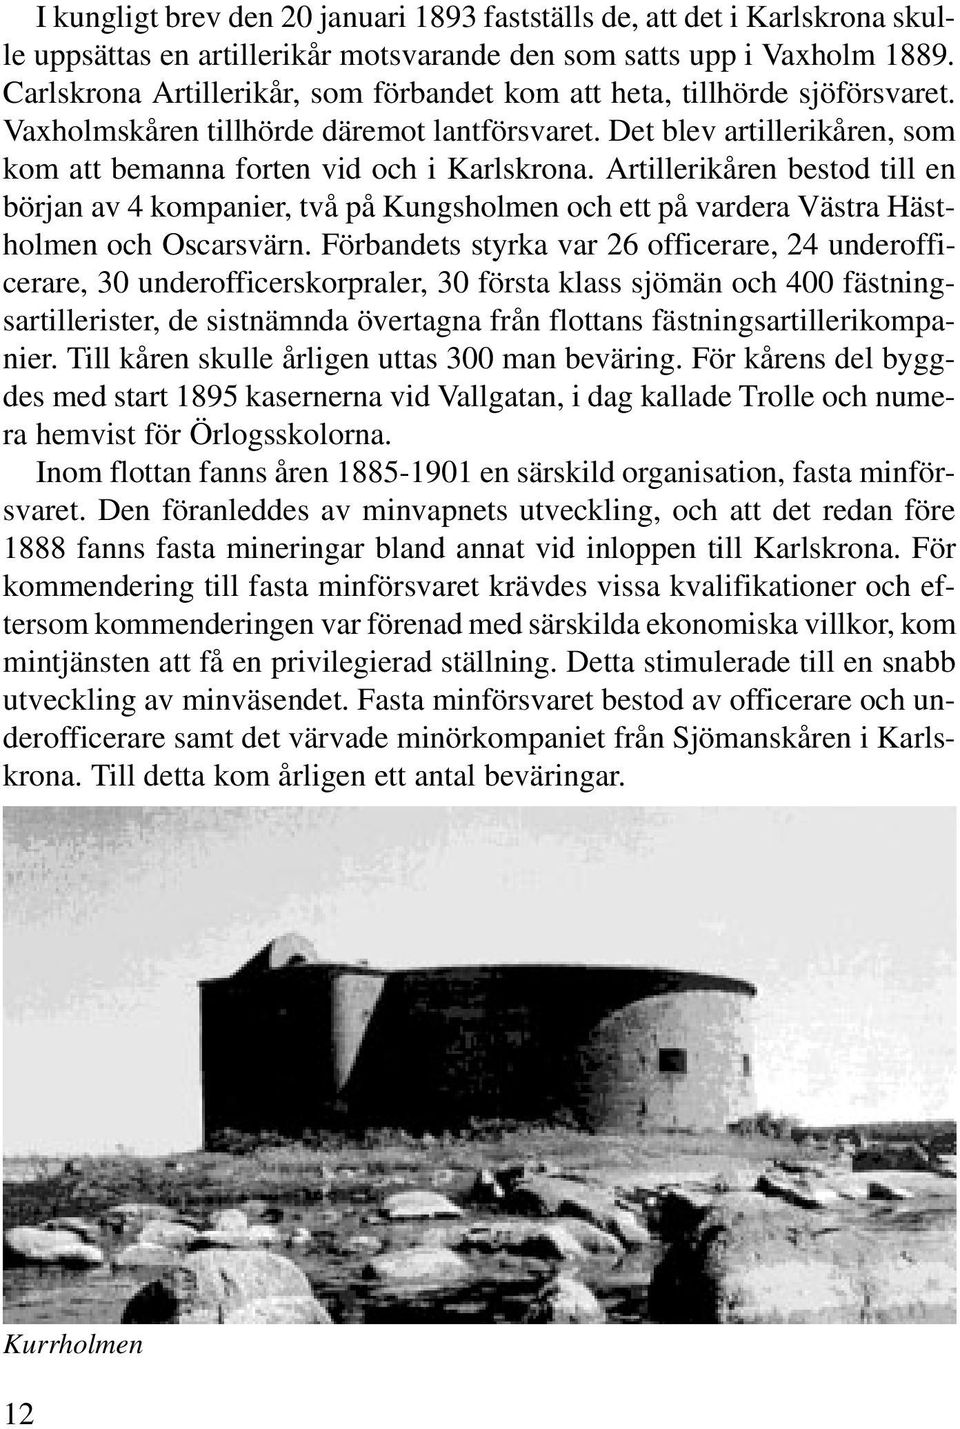 Artillerikåren bestod till en början av 4 kompanier, två på Kungsholmen och ett på vardera Västra Hästholmen och Oscarsvärn.